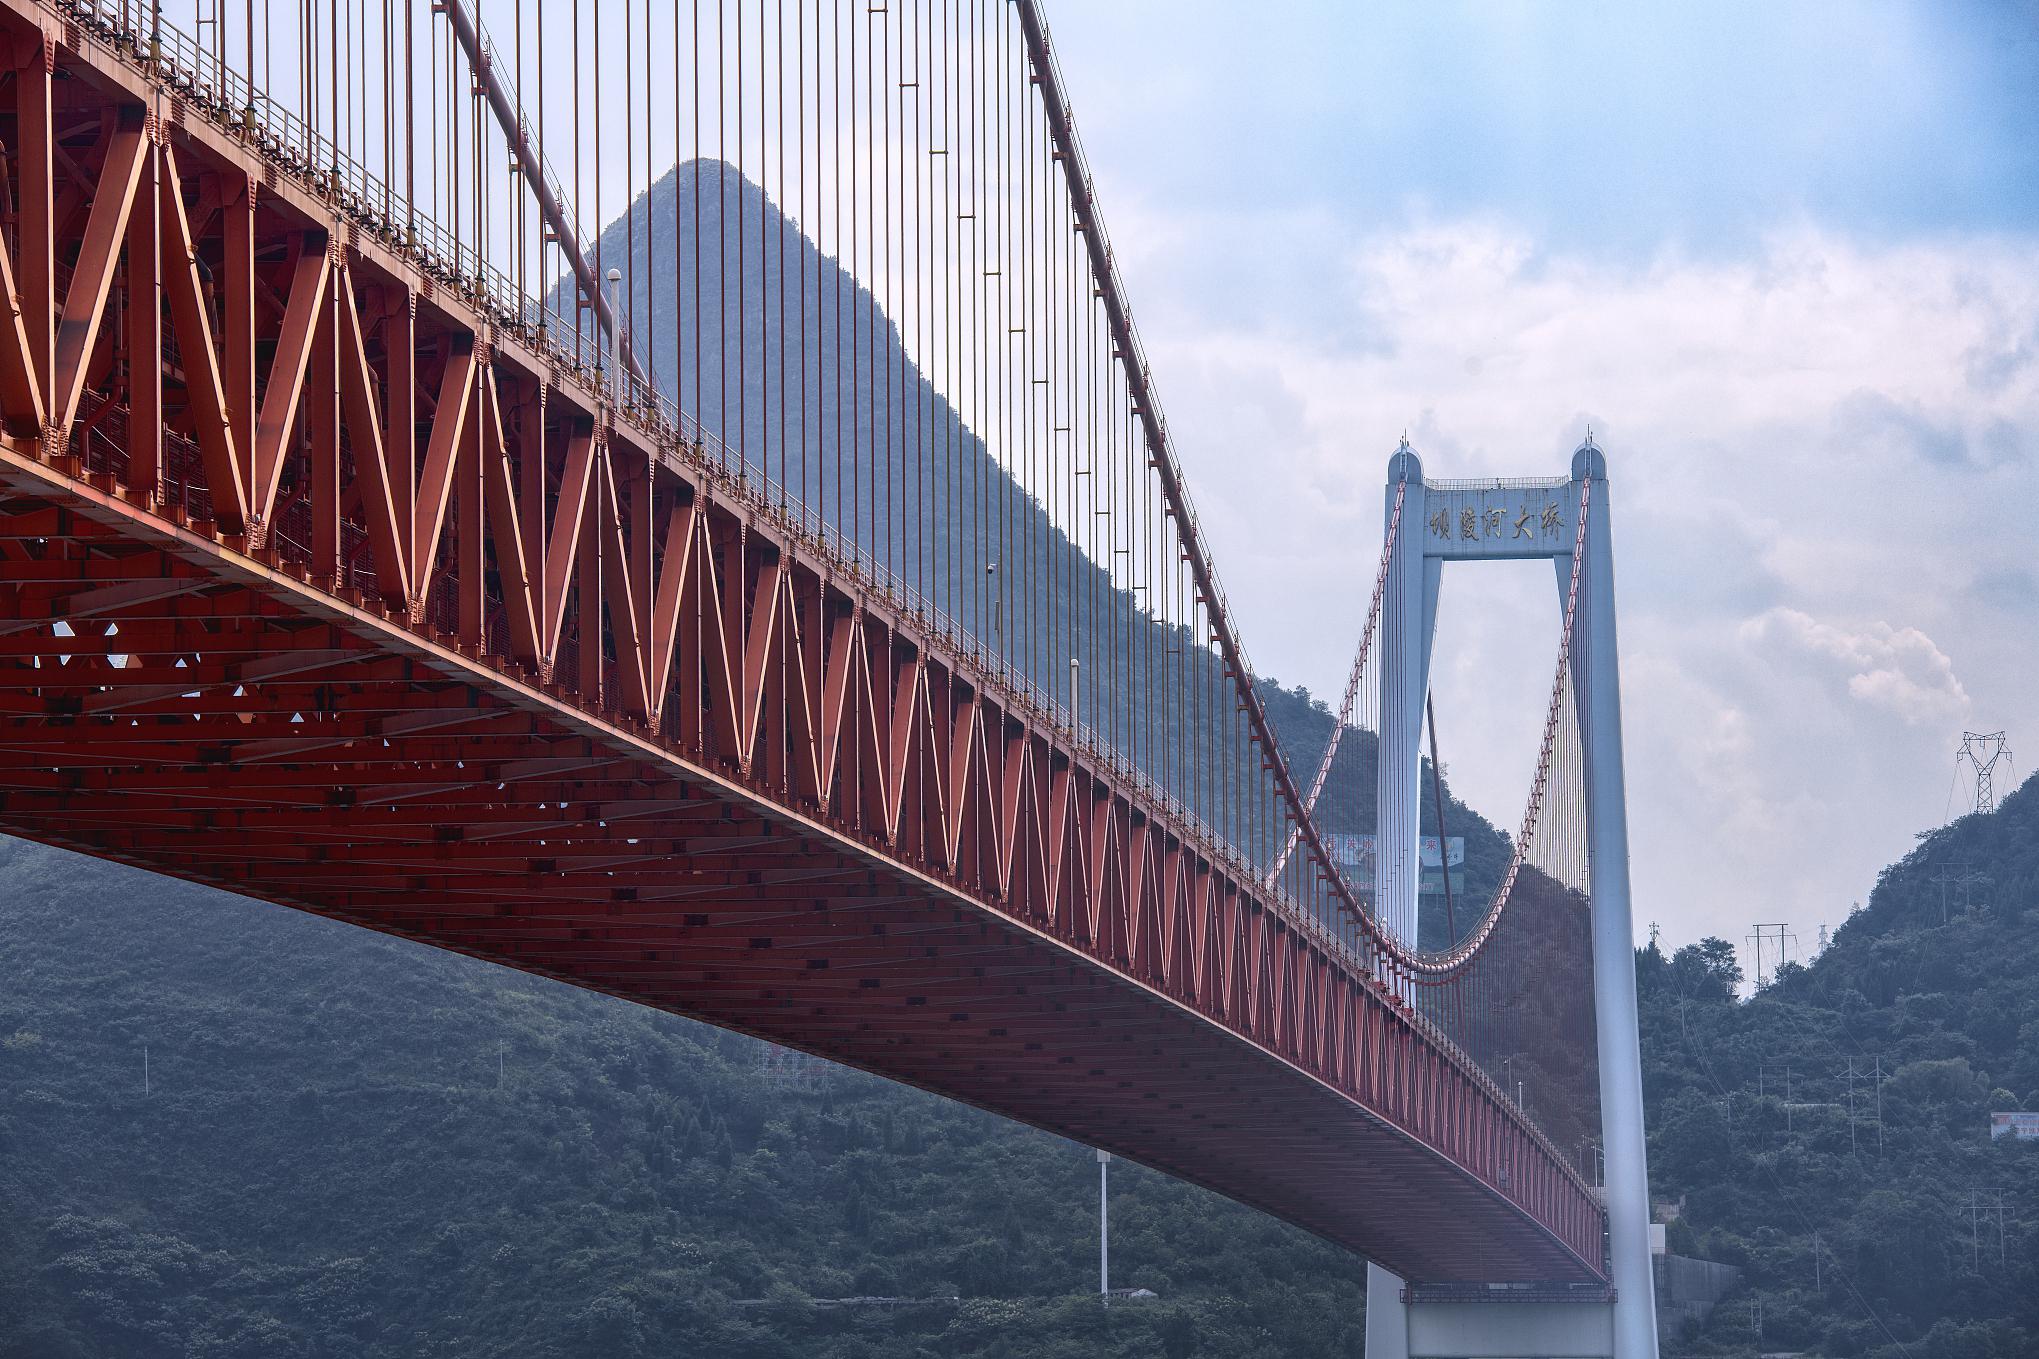 北盘江大桥观赏攻略 北盘江大桥是一座连接贵州省六盘水市和云南省